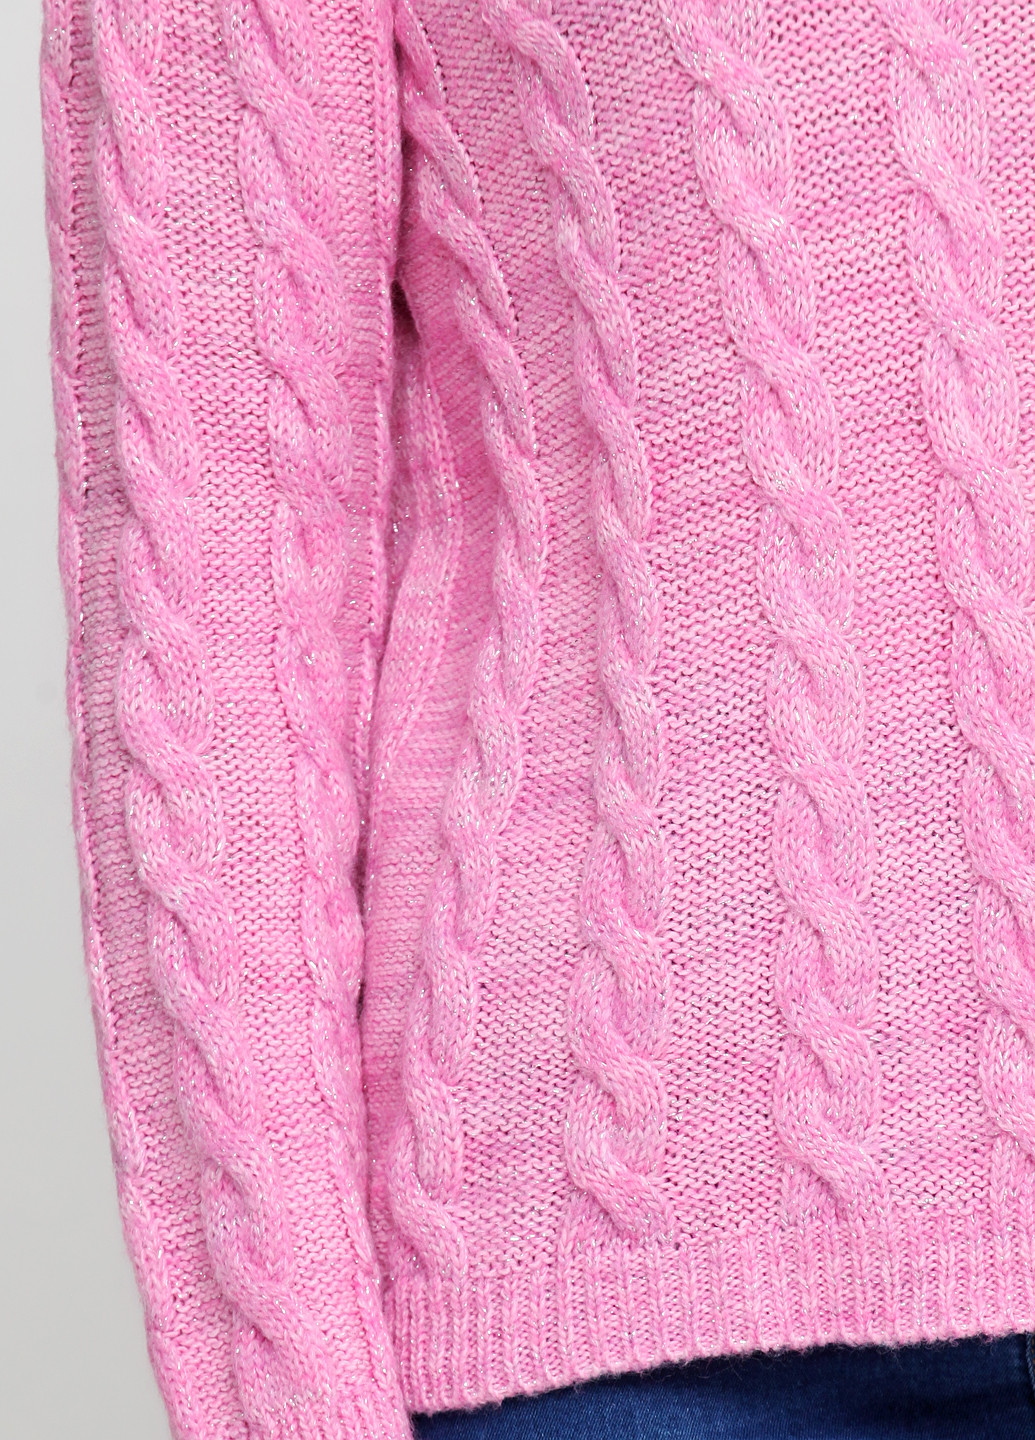 Розовый демисезонный свитер Dins Tricot